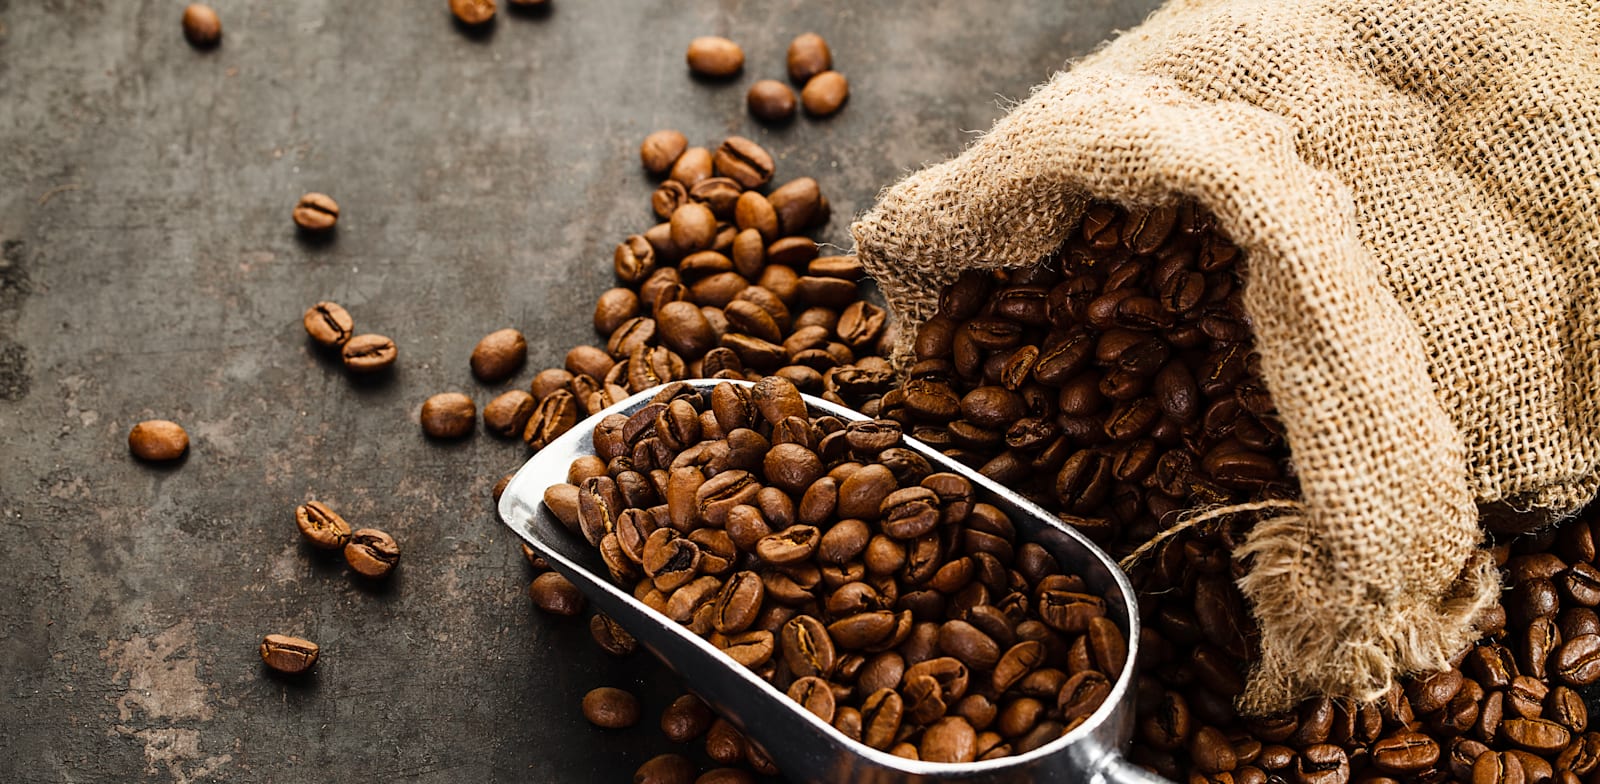 פולי קפה. המחיר צפוי לעלות / צילום: Shutterstock